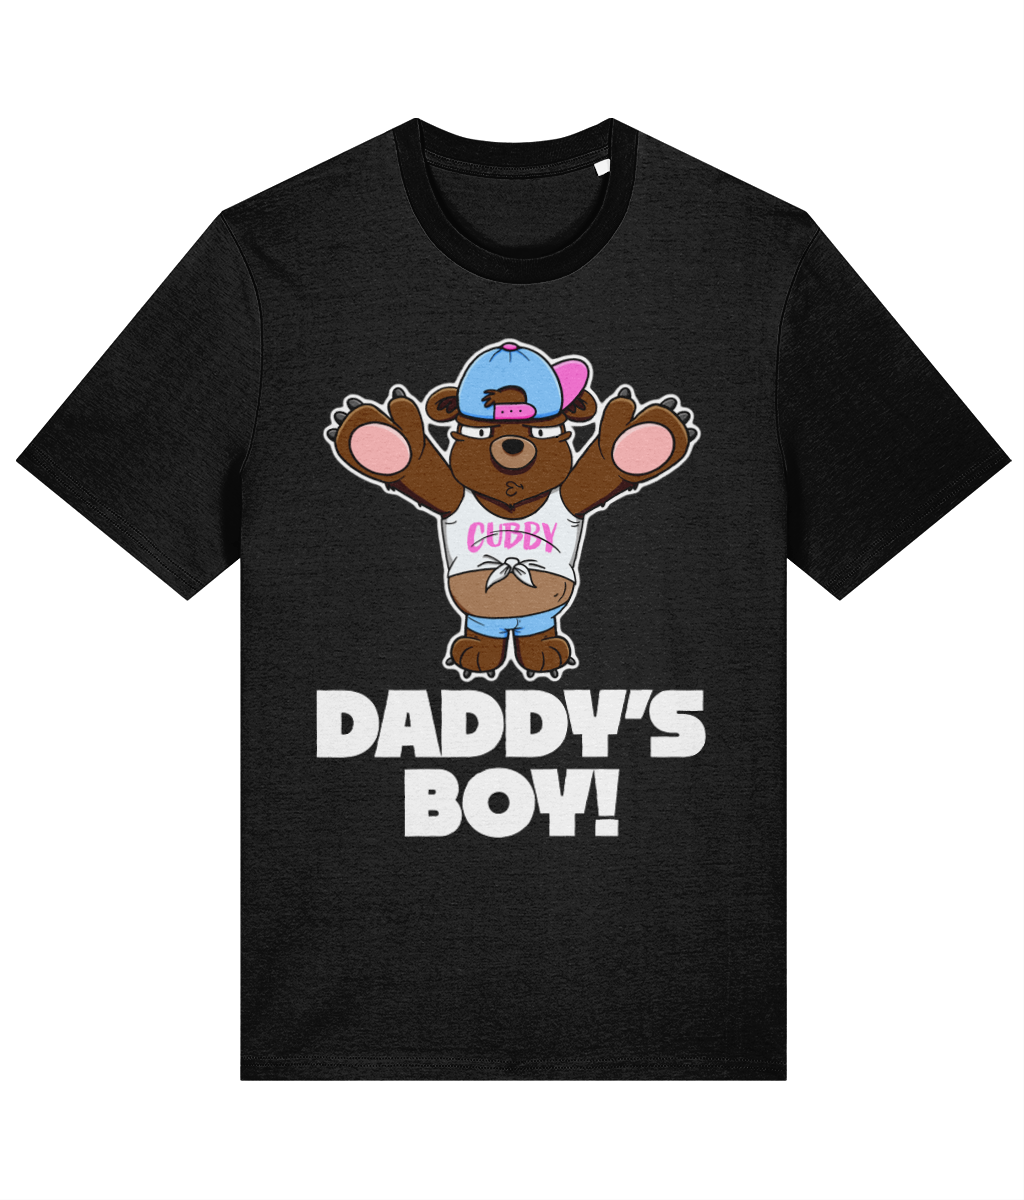 Daddy’s Boy! T-Shirt